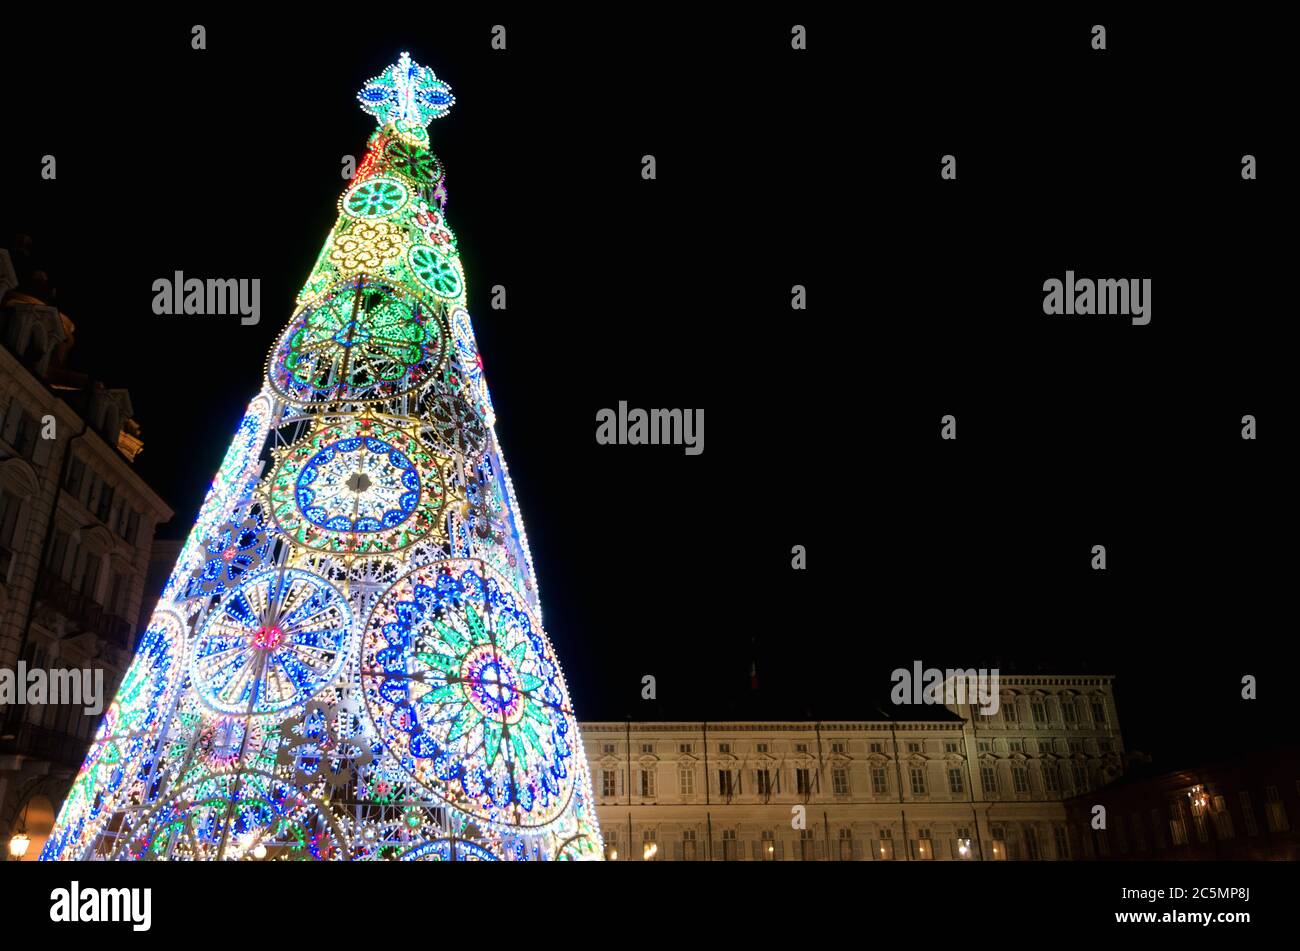 Trin (Piemonte, Italia): Piazza Castello, piazza principale della città, illuminata dall'albero di natale di notte, con Palazzo reale sullo sfondo Foto Stock